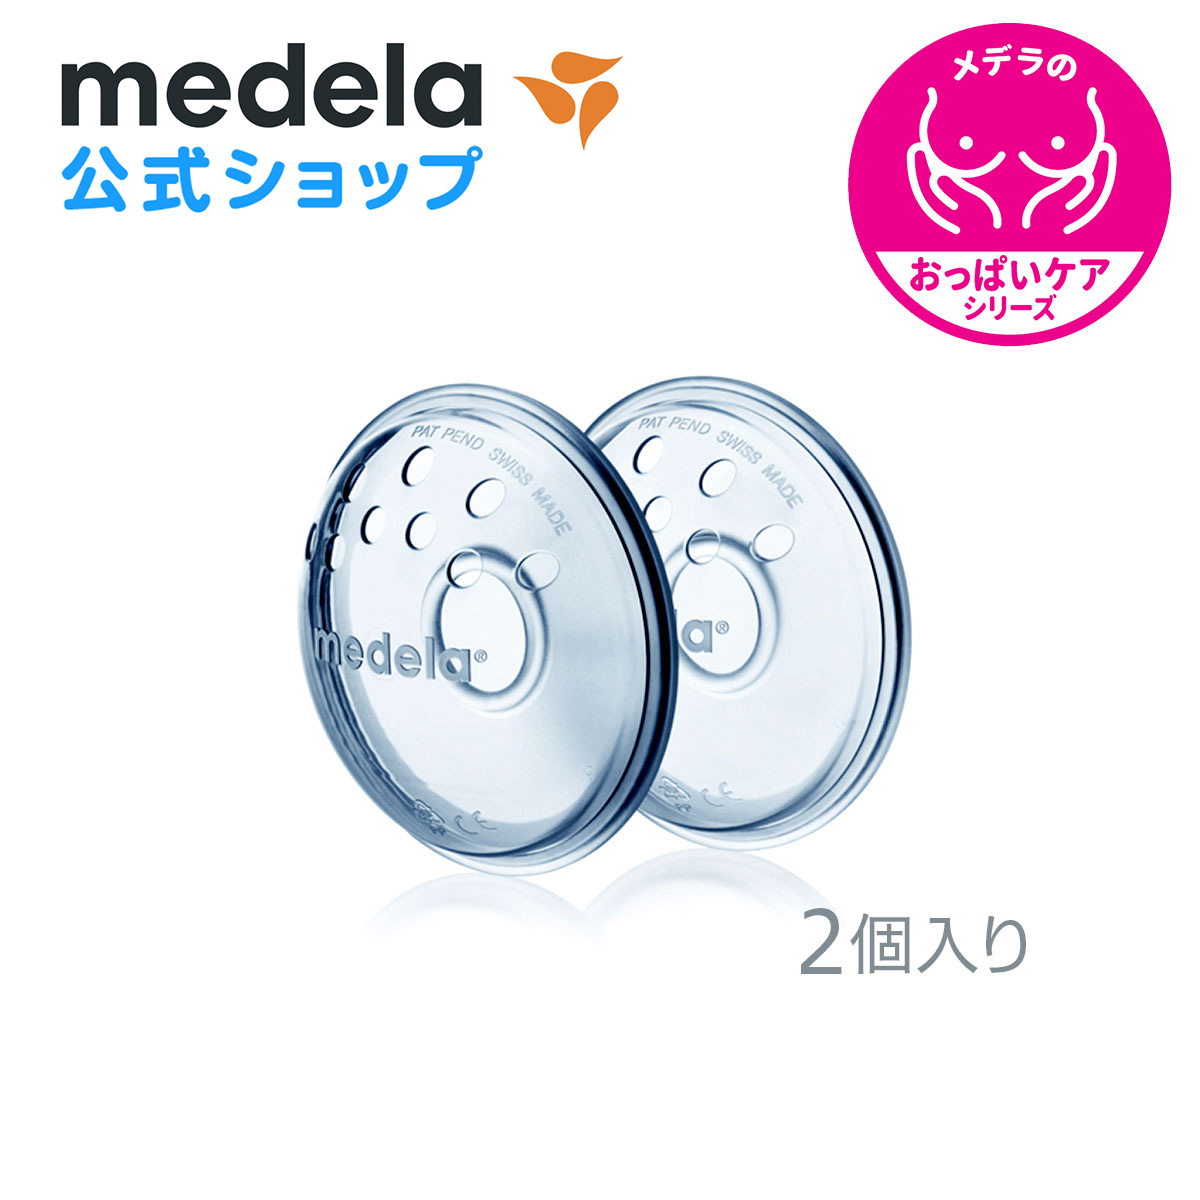 公式 Medela メデラ ニップルフォーマー 2個入り 扁平乳頭 世界の人気ブランド 陥没乳頭 medela 乳首 2個 おっぱいケア 授乳 母乳育児